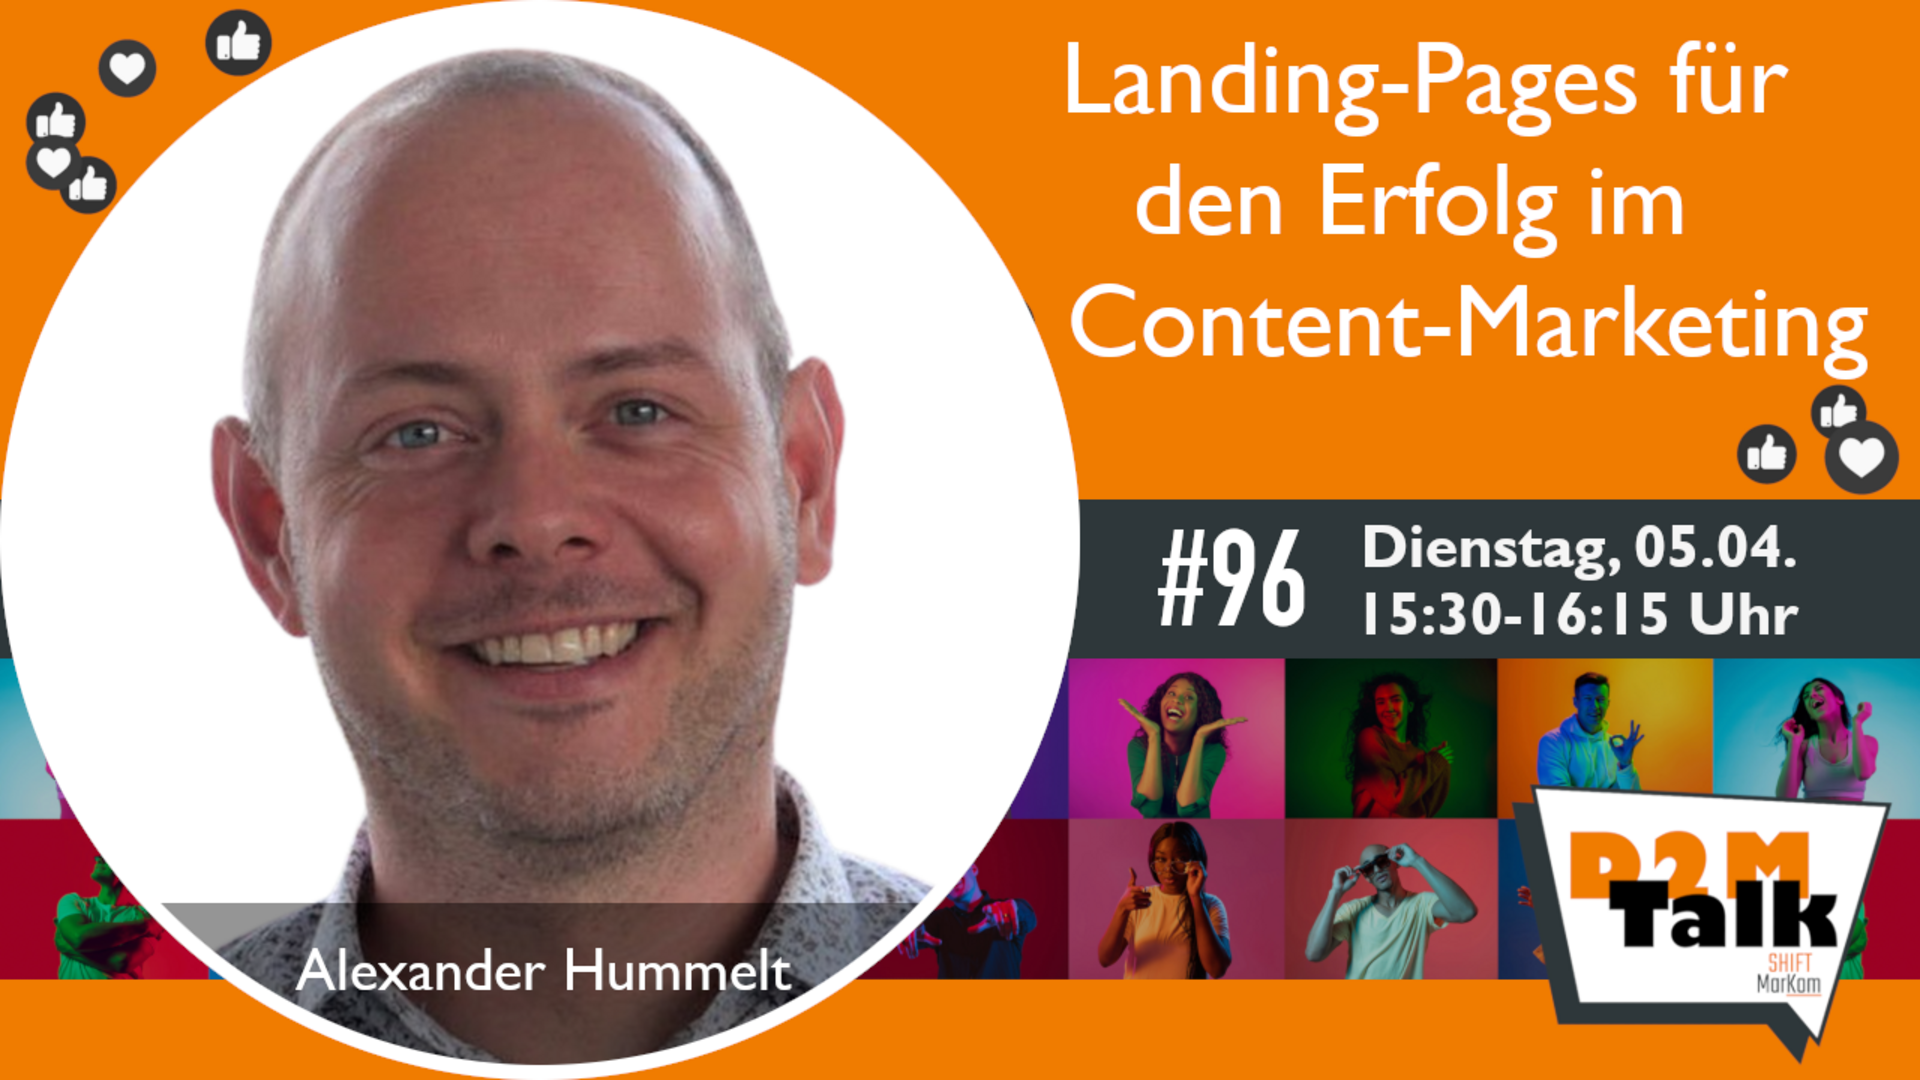 Im Gespräch mit Alexander Hummelt zur Bedeutung von Landing-Pages für den Erfolg im Content-Marketing